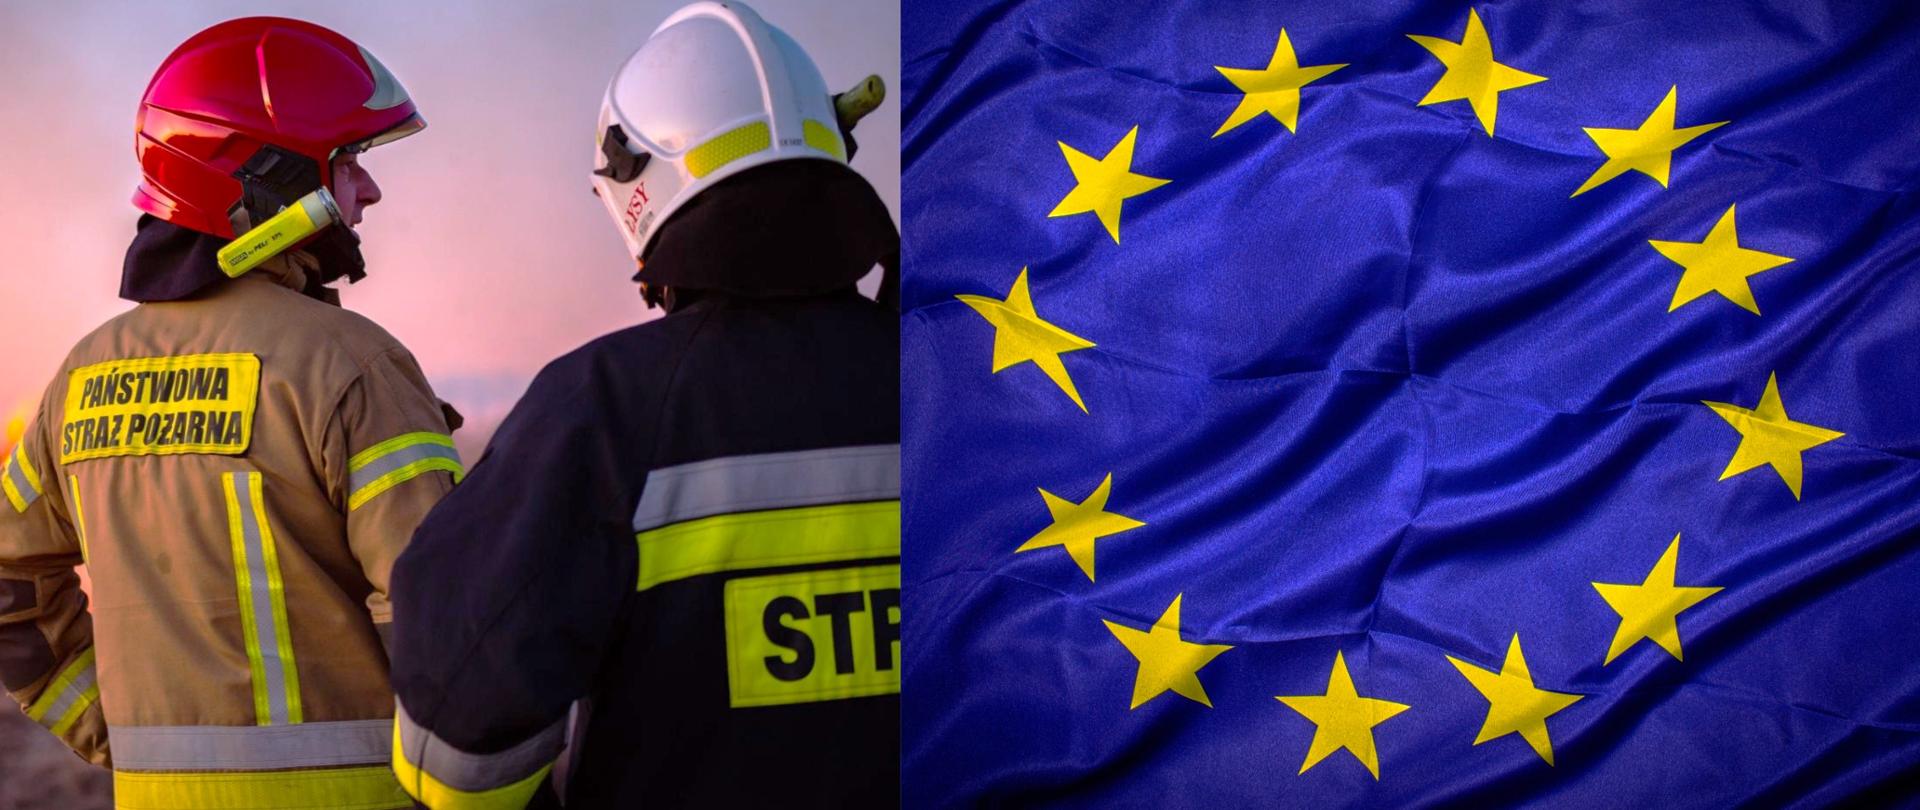 
Baner z flagą UE oraz zdjęciem dwóch strażaków w umundurowaniu bojowym w kolorze czarnym i piaskowym. 